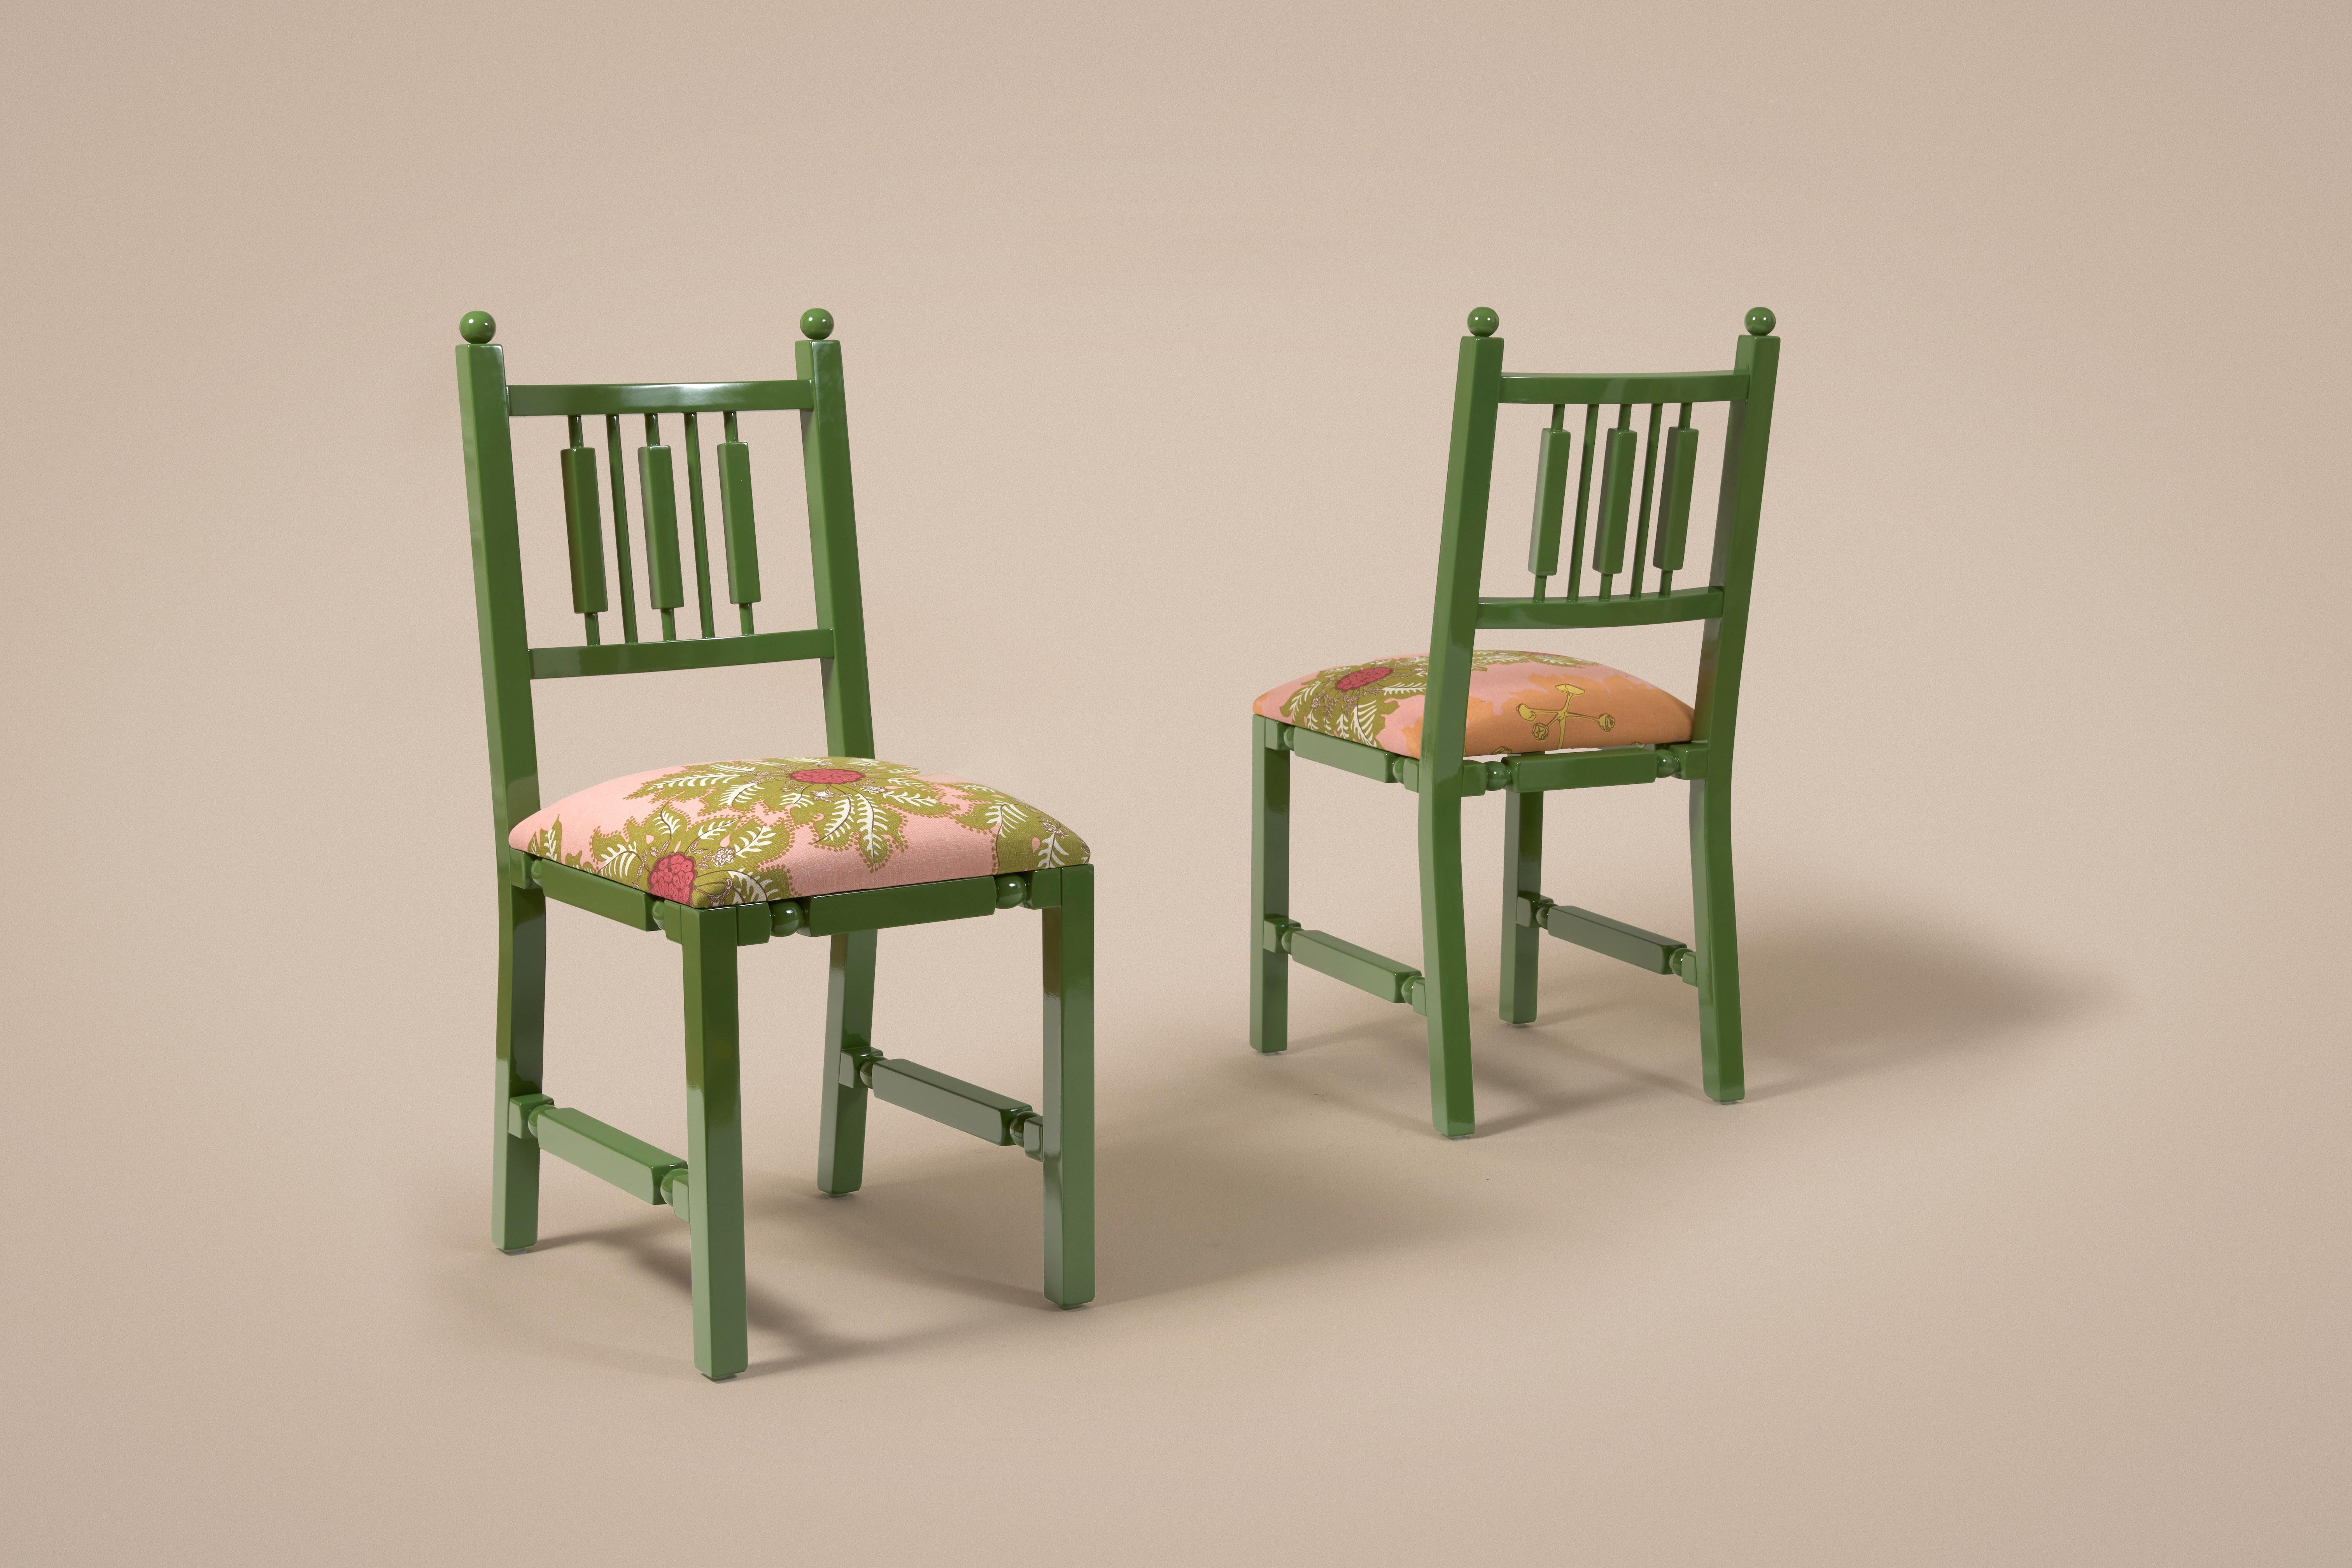 Chaise en bois laqué ultra brillant inspirée des chaises indiennes classiques. Rembourrage avec couleurs personnalisables. Grand choix de tissus Pierre Frey. Tout est fabriqué au Portugal.